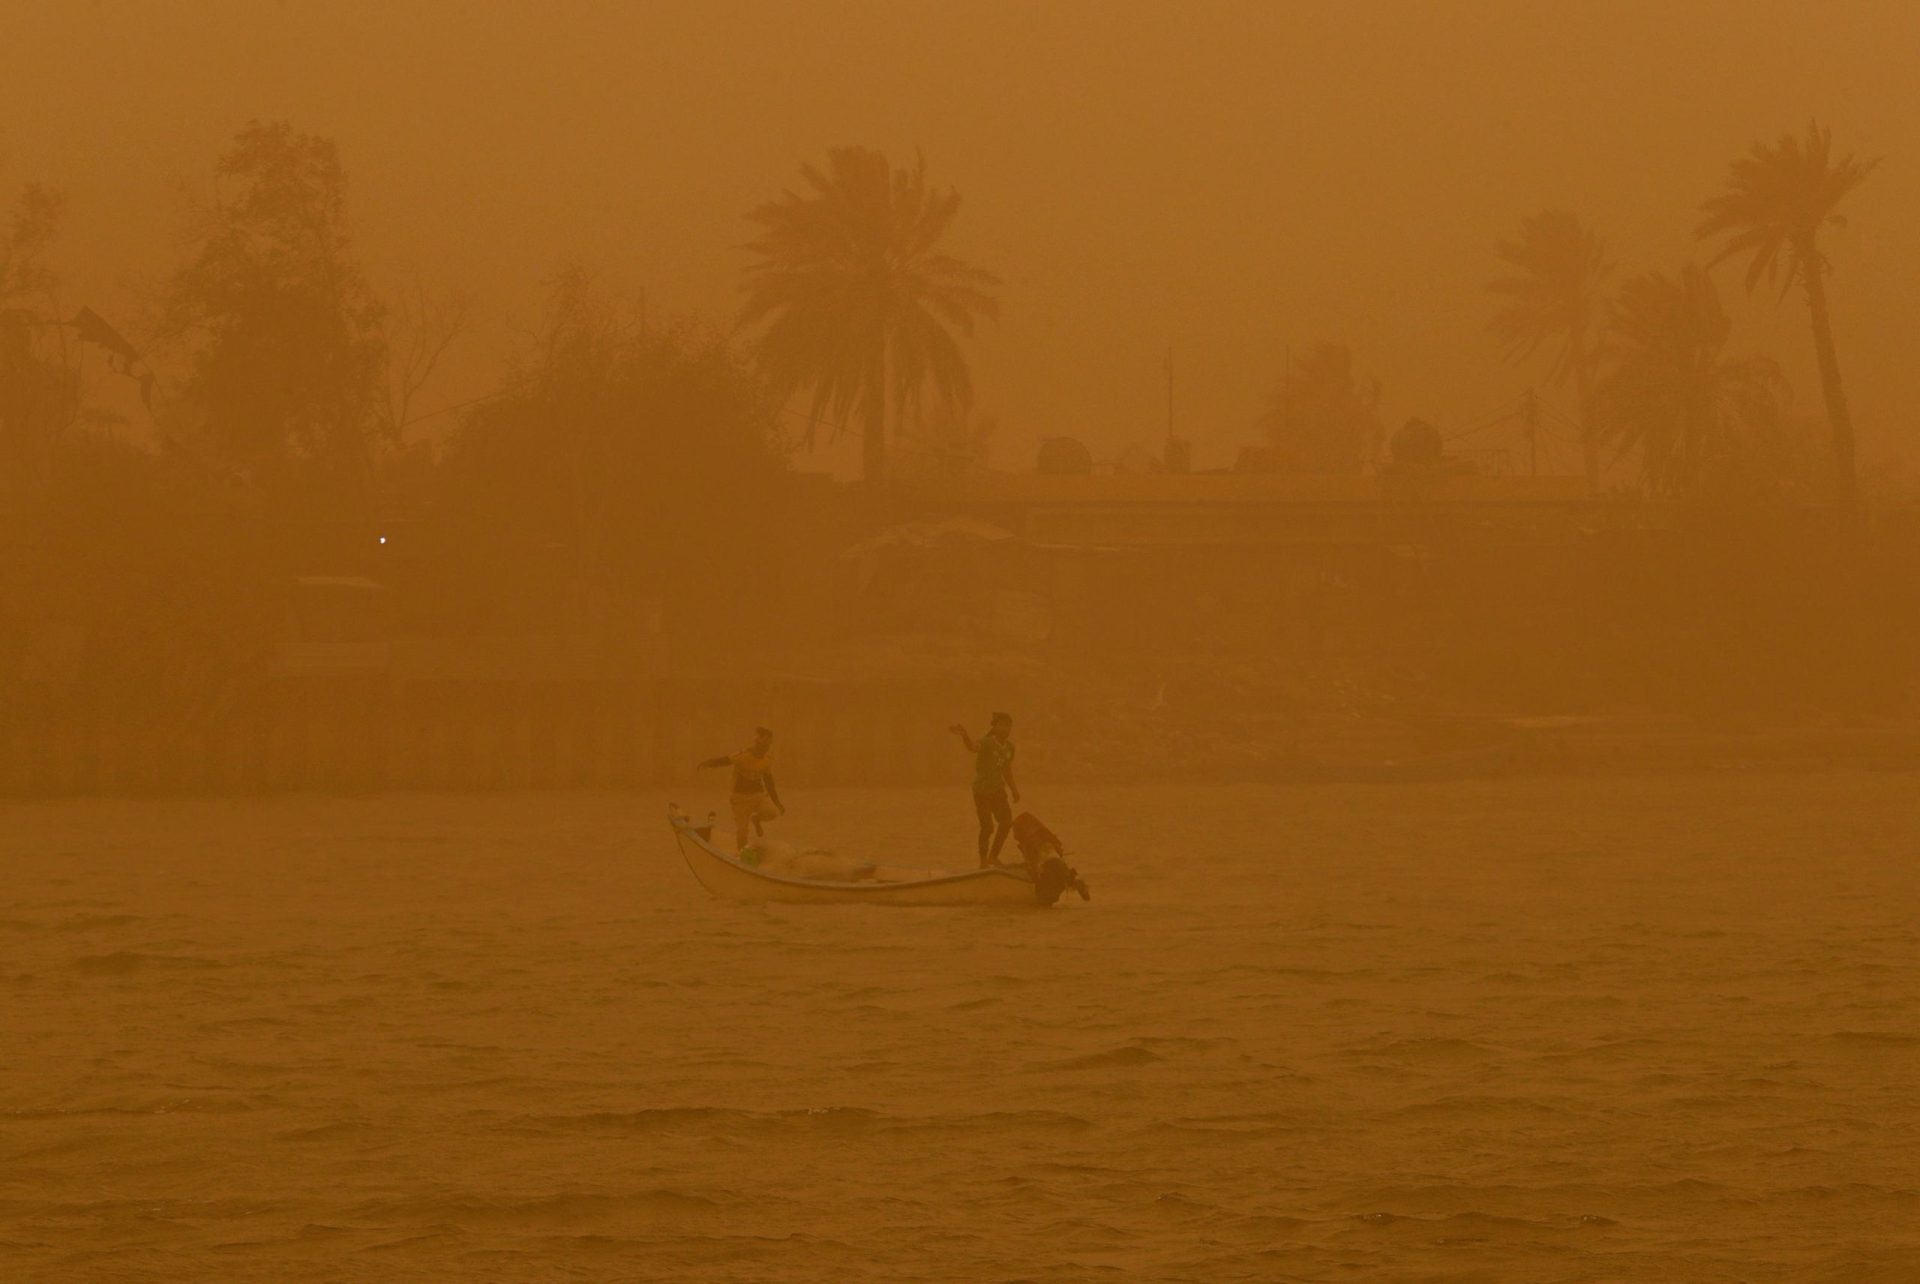 Una nueva tormenta de arena envuelve partes de Oriente Medio: